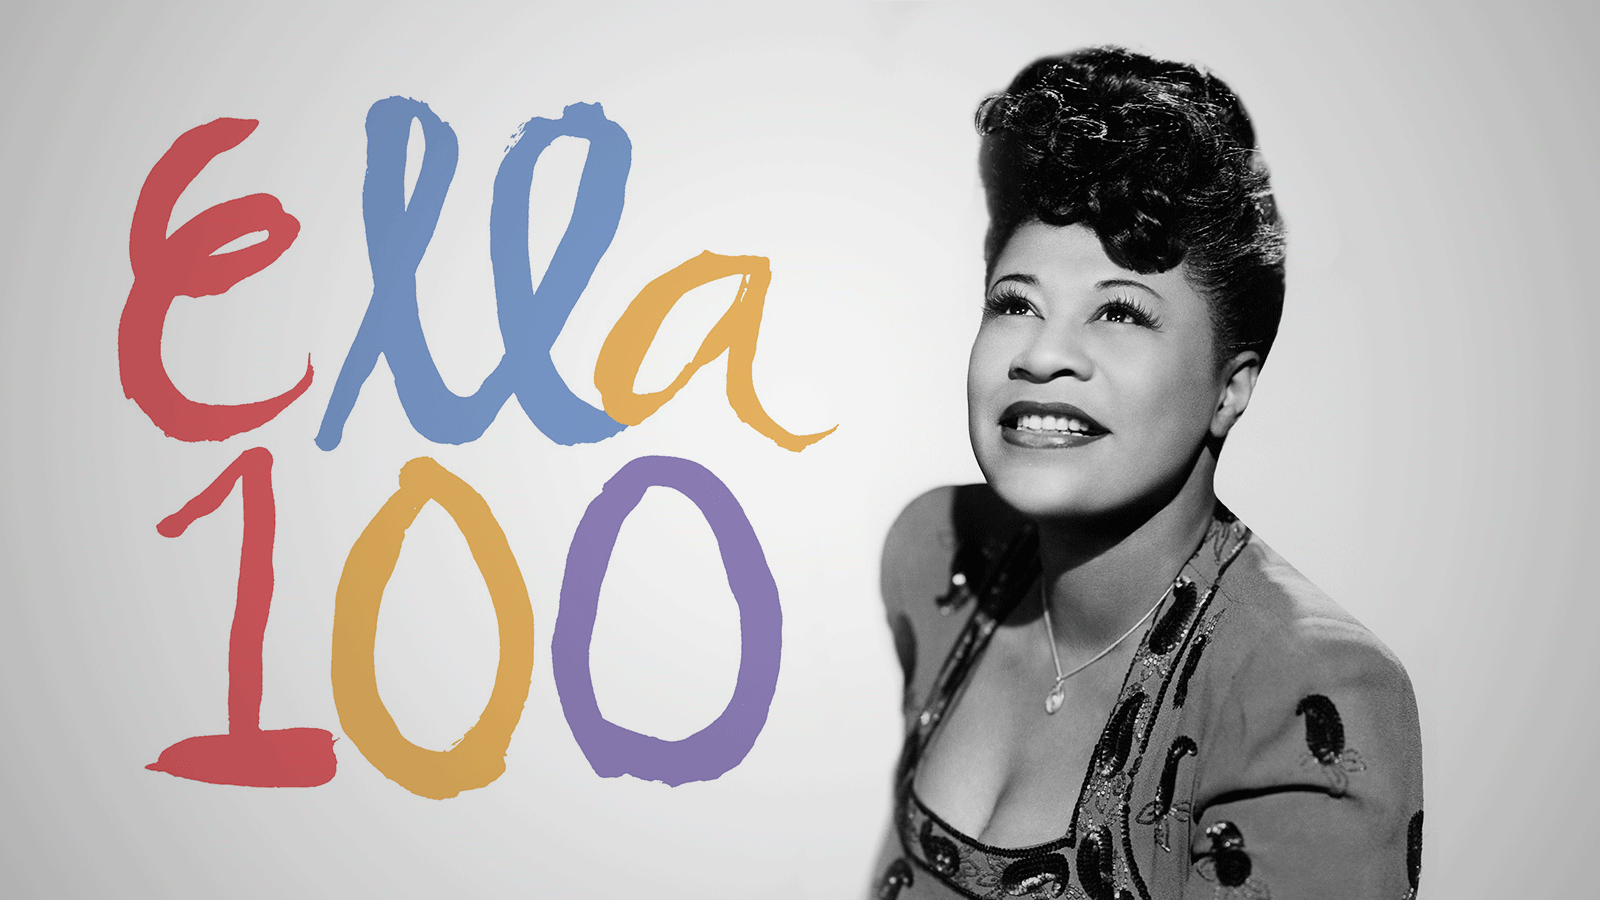 Celebrate Ella Fitzgerald's centennial birthday during Jazz Appreciation Month